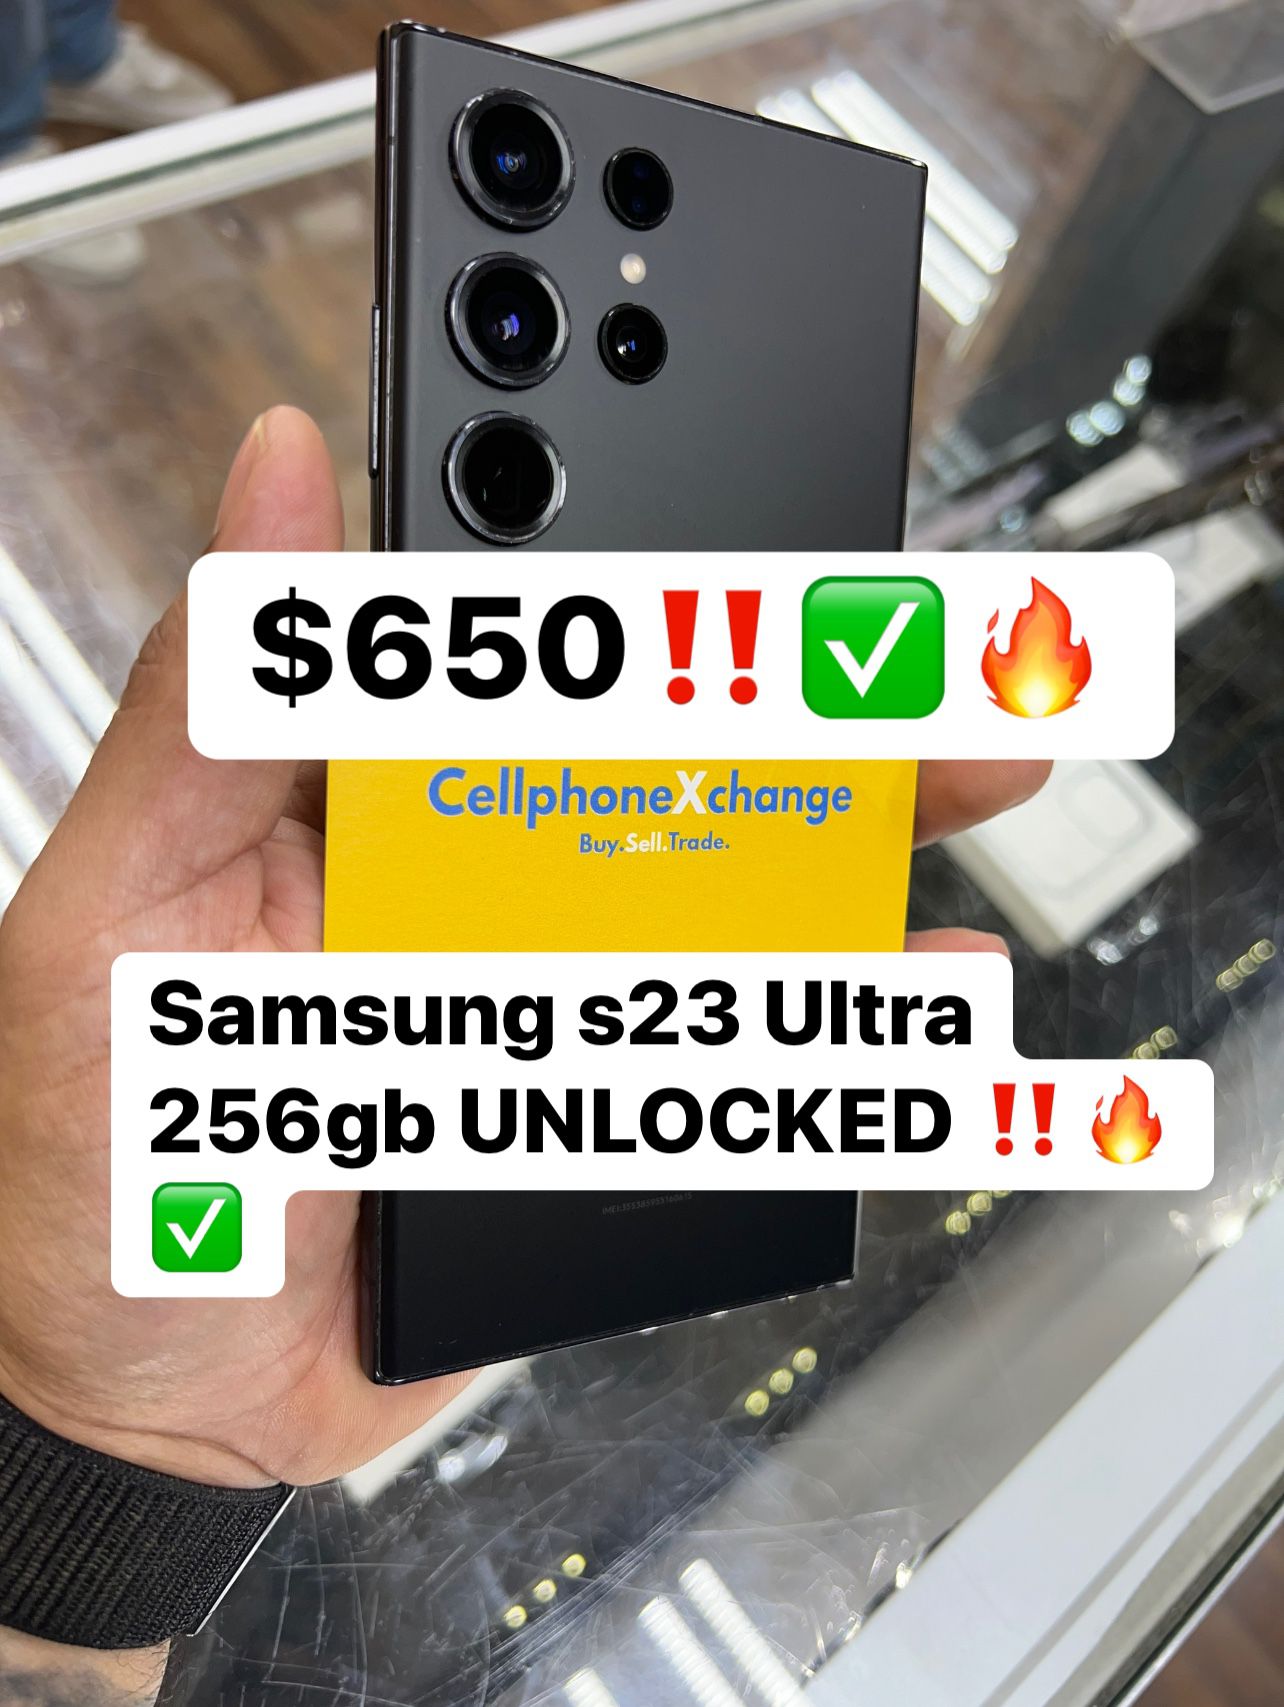 Samsung Galaxy S23 Ultra 256gb UNLOCKED 